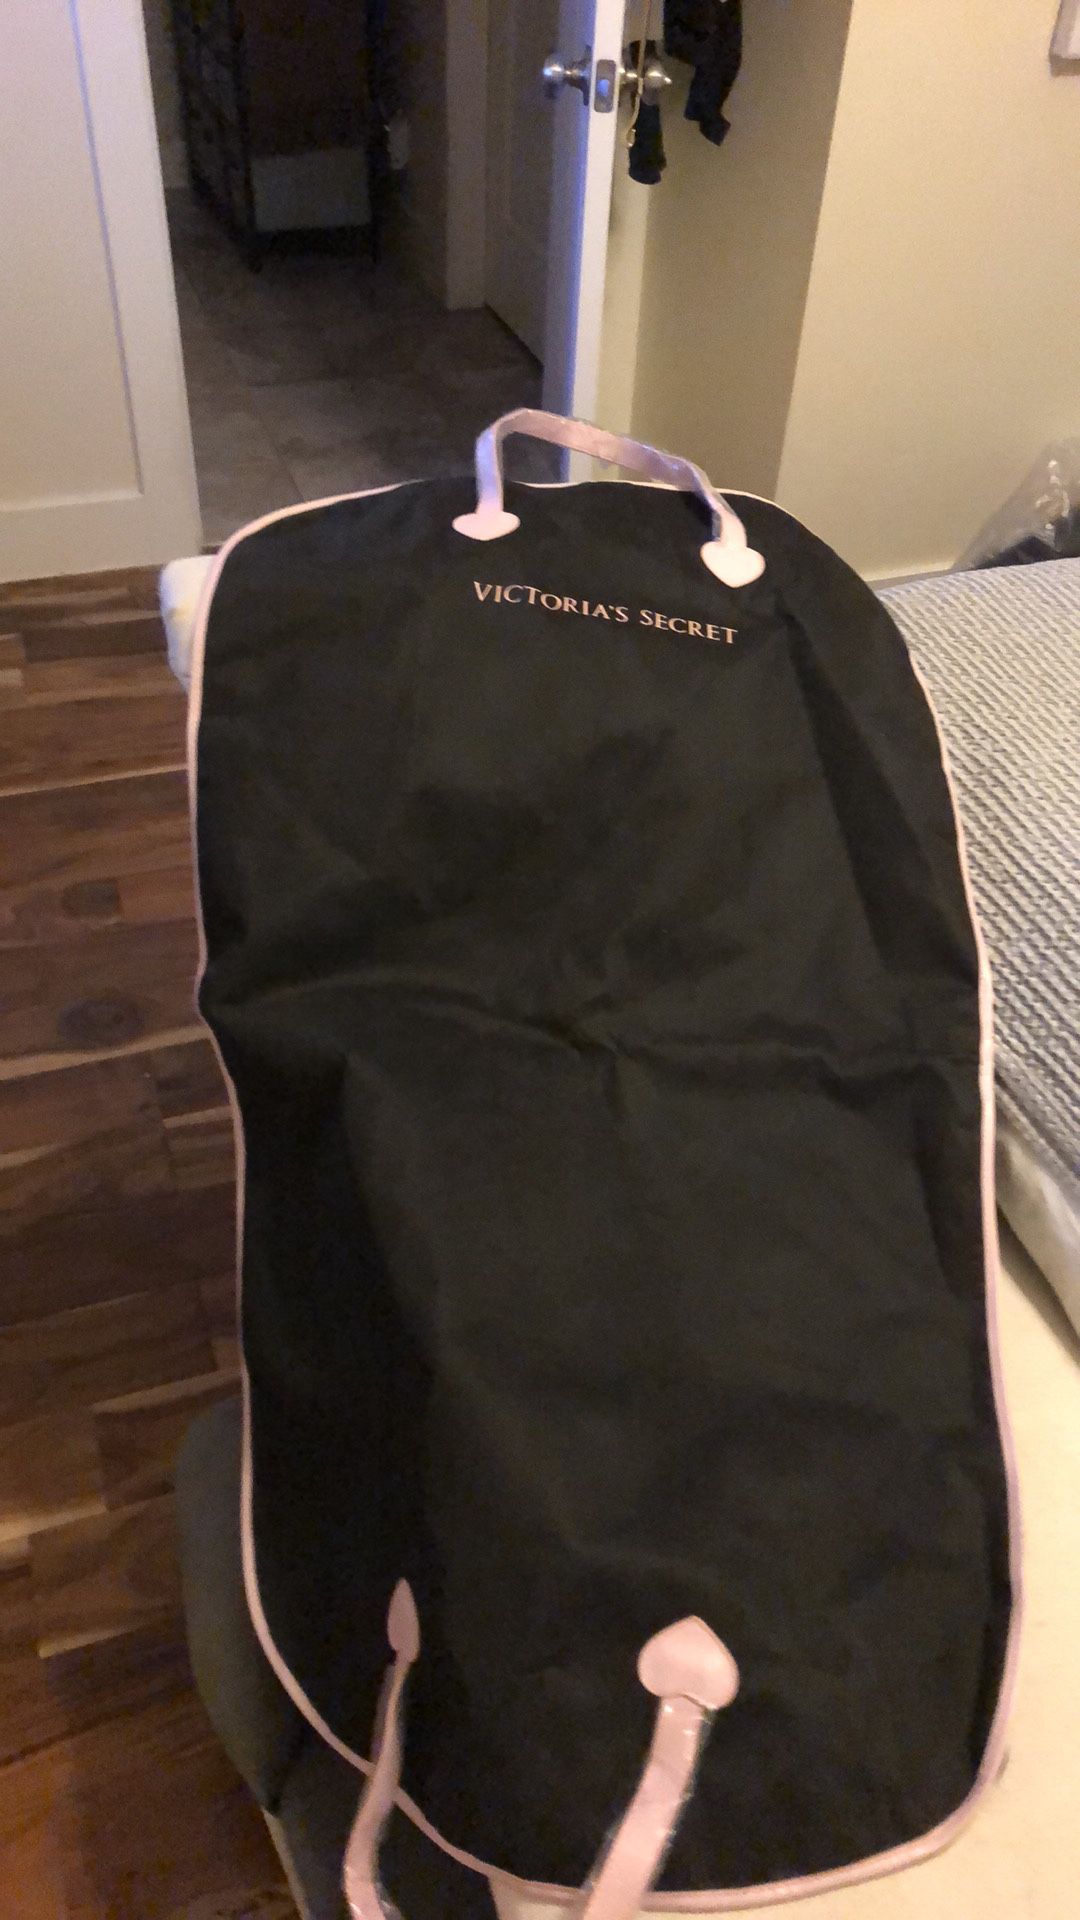 Victoria’s Secret garment bag new